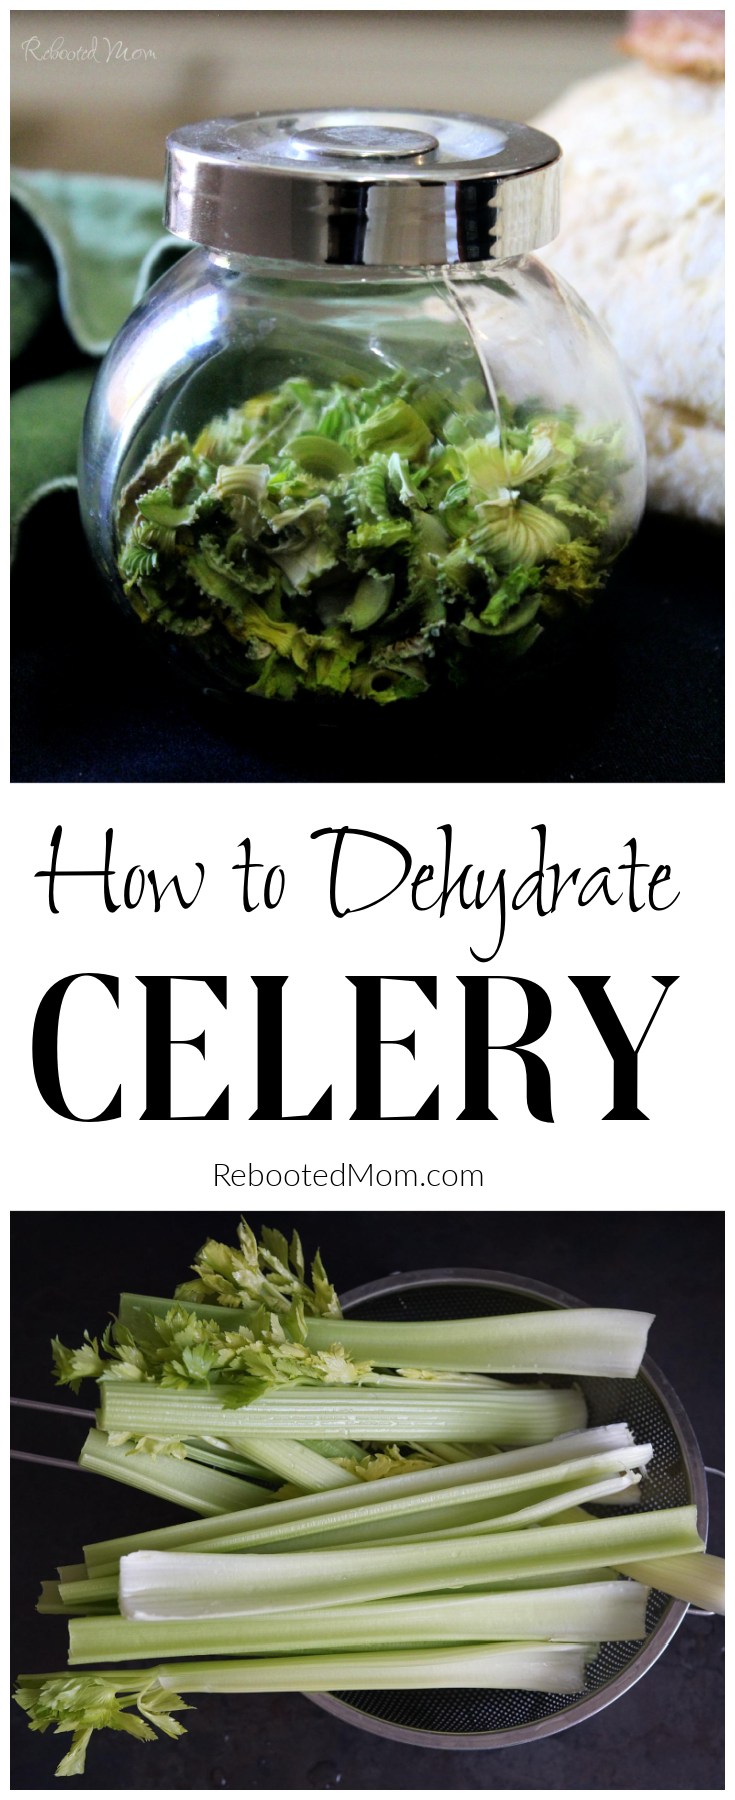 Dehydrate Celery